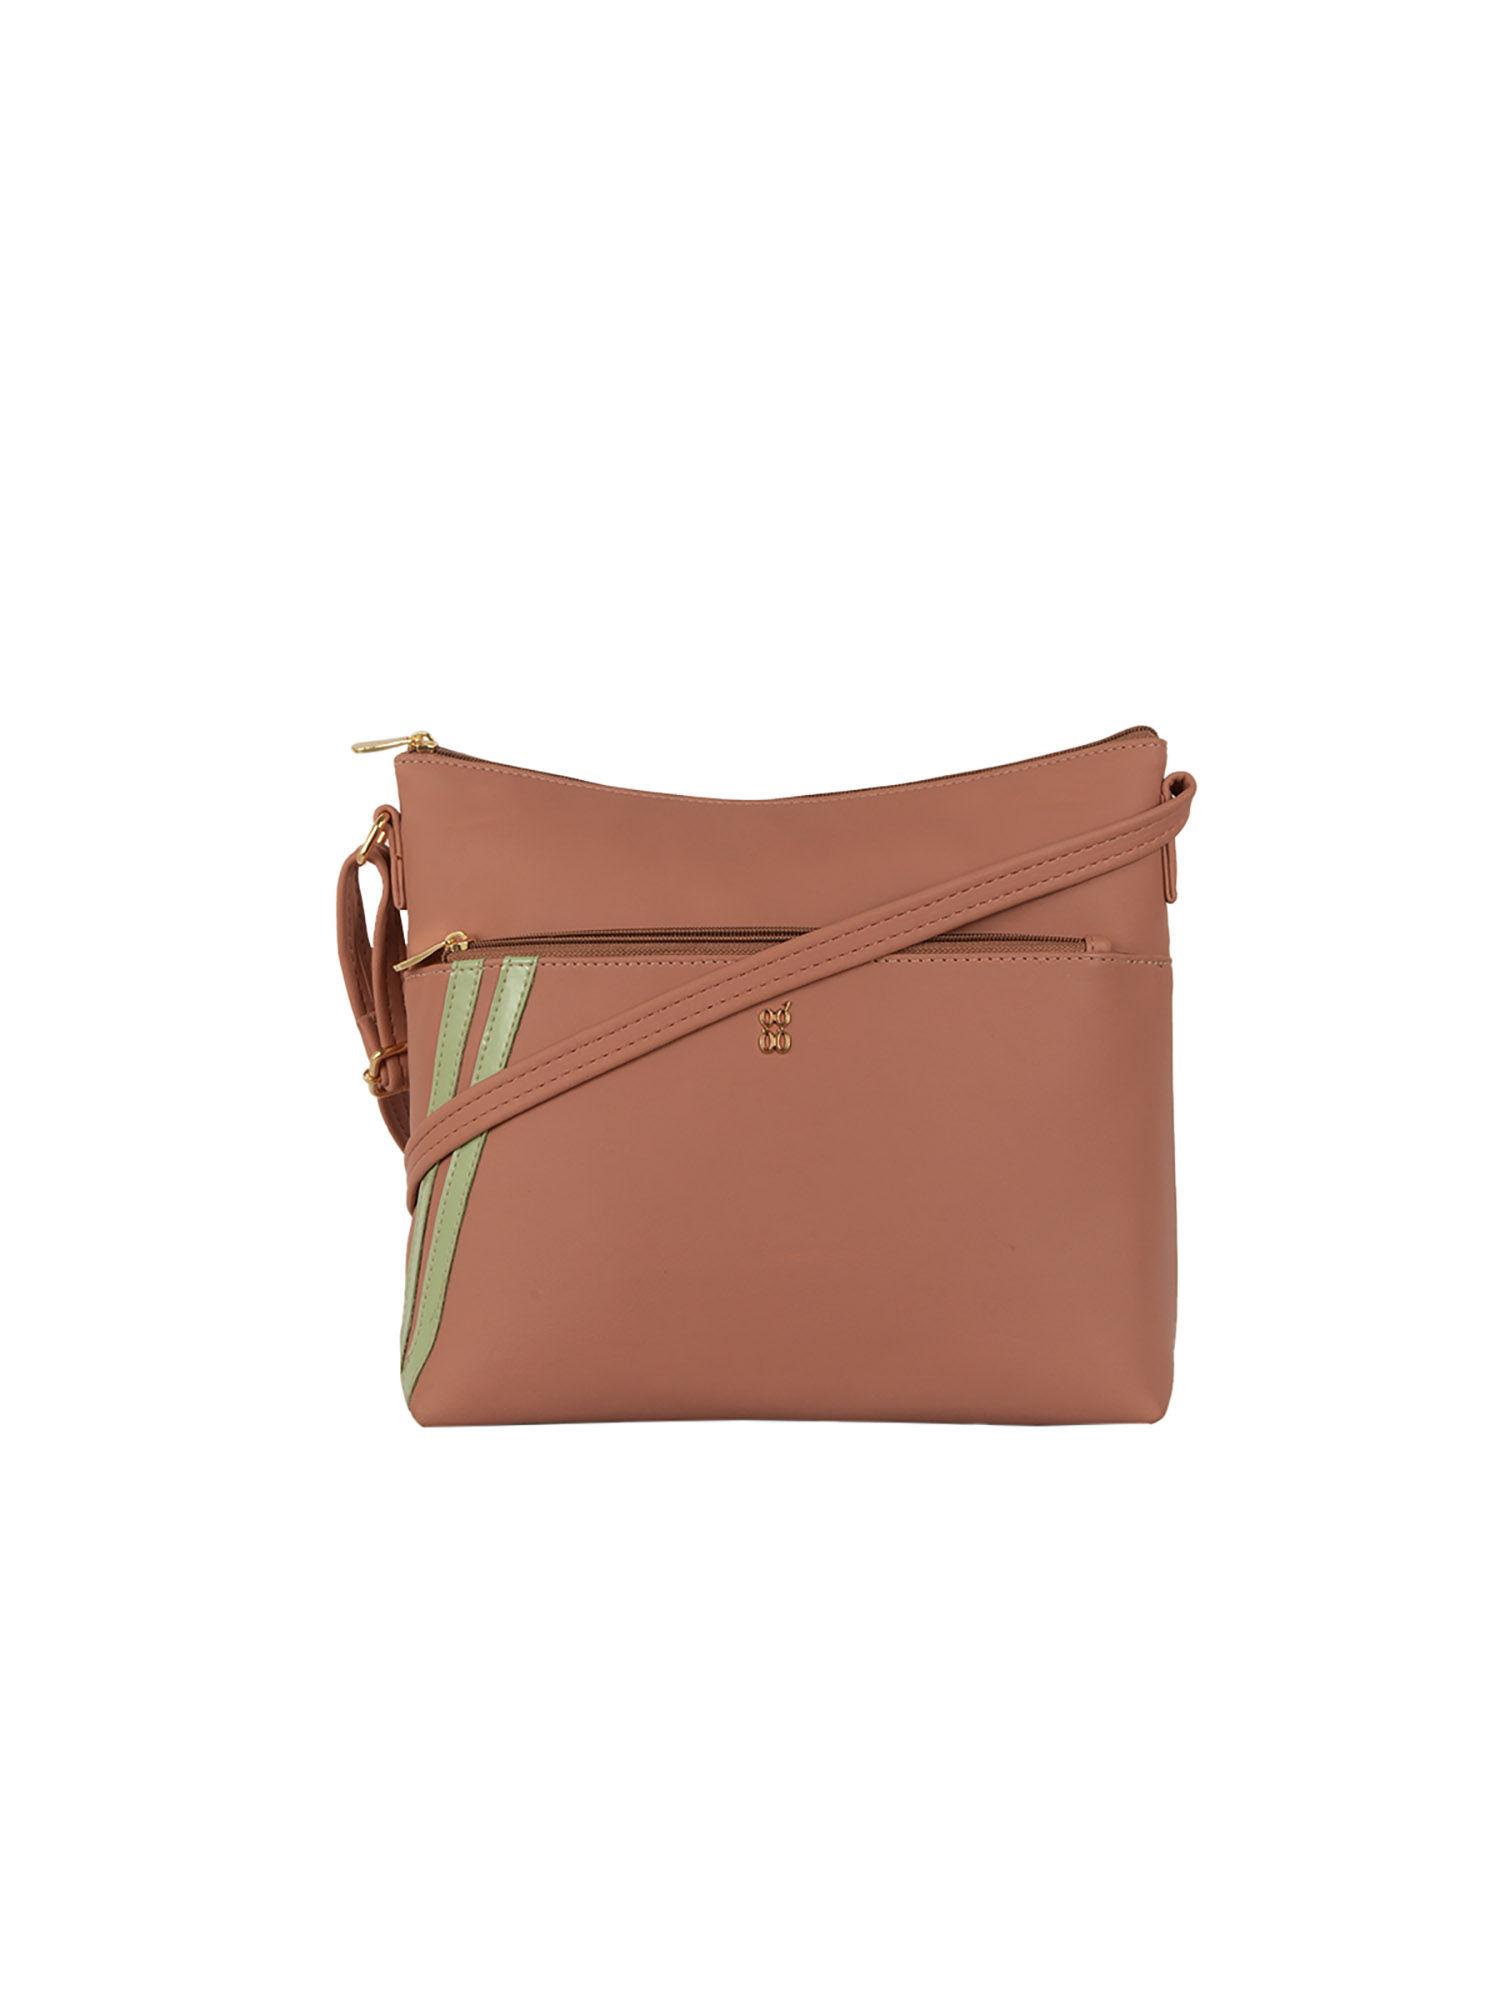 manif pink medium sling bag